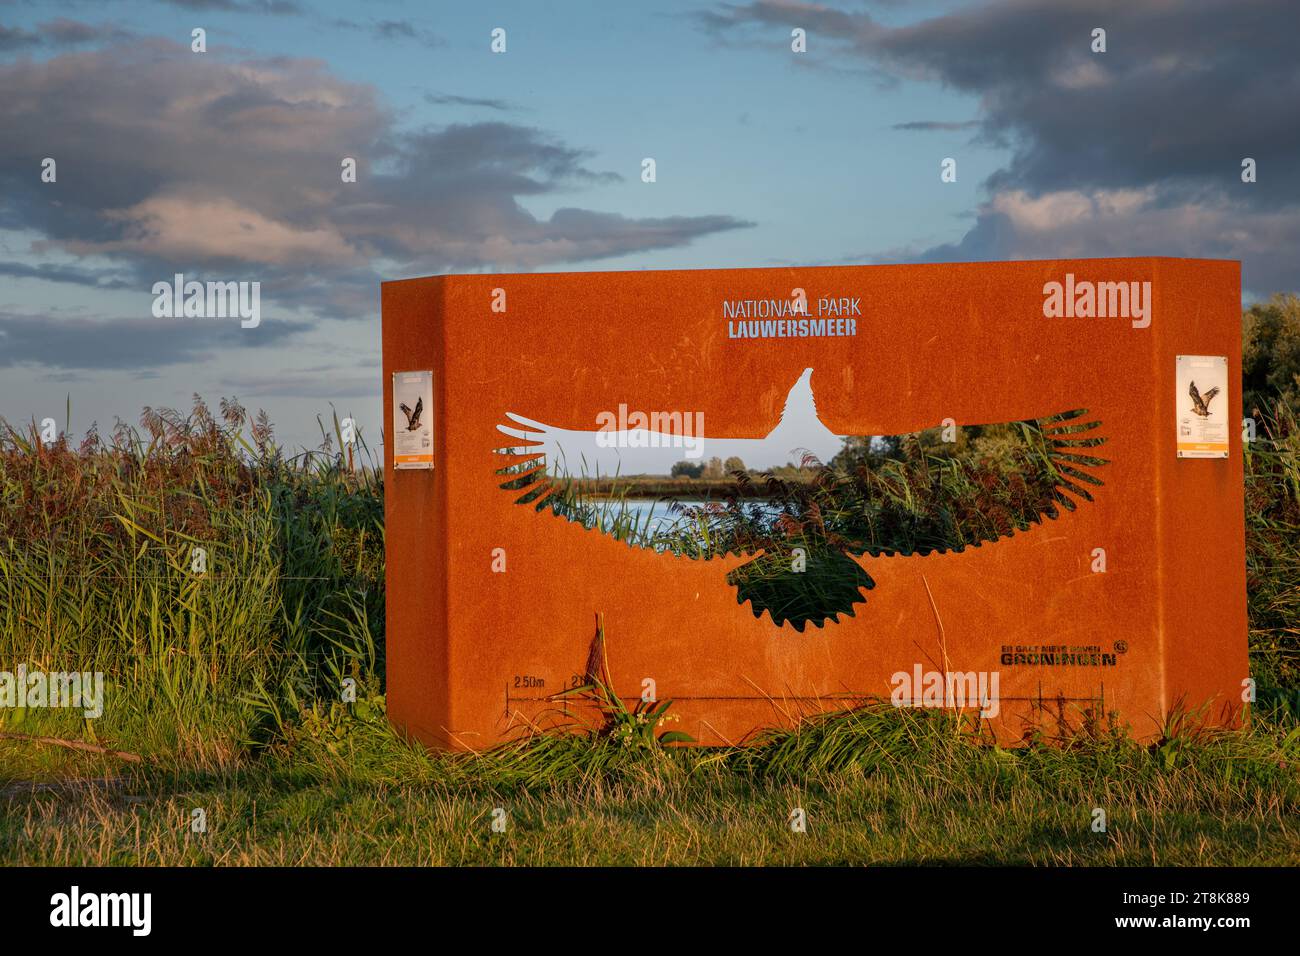 Informationsschild mit Seeadler, Niederlande, Lauwersmeer Nationalpark, Ezumakeeg Stockfoto